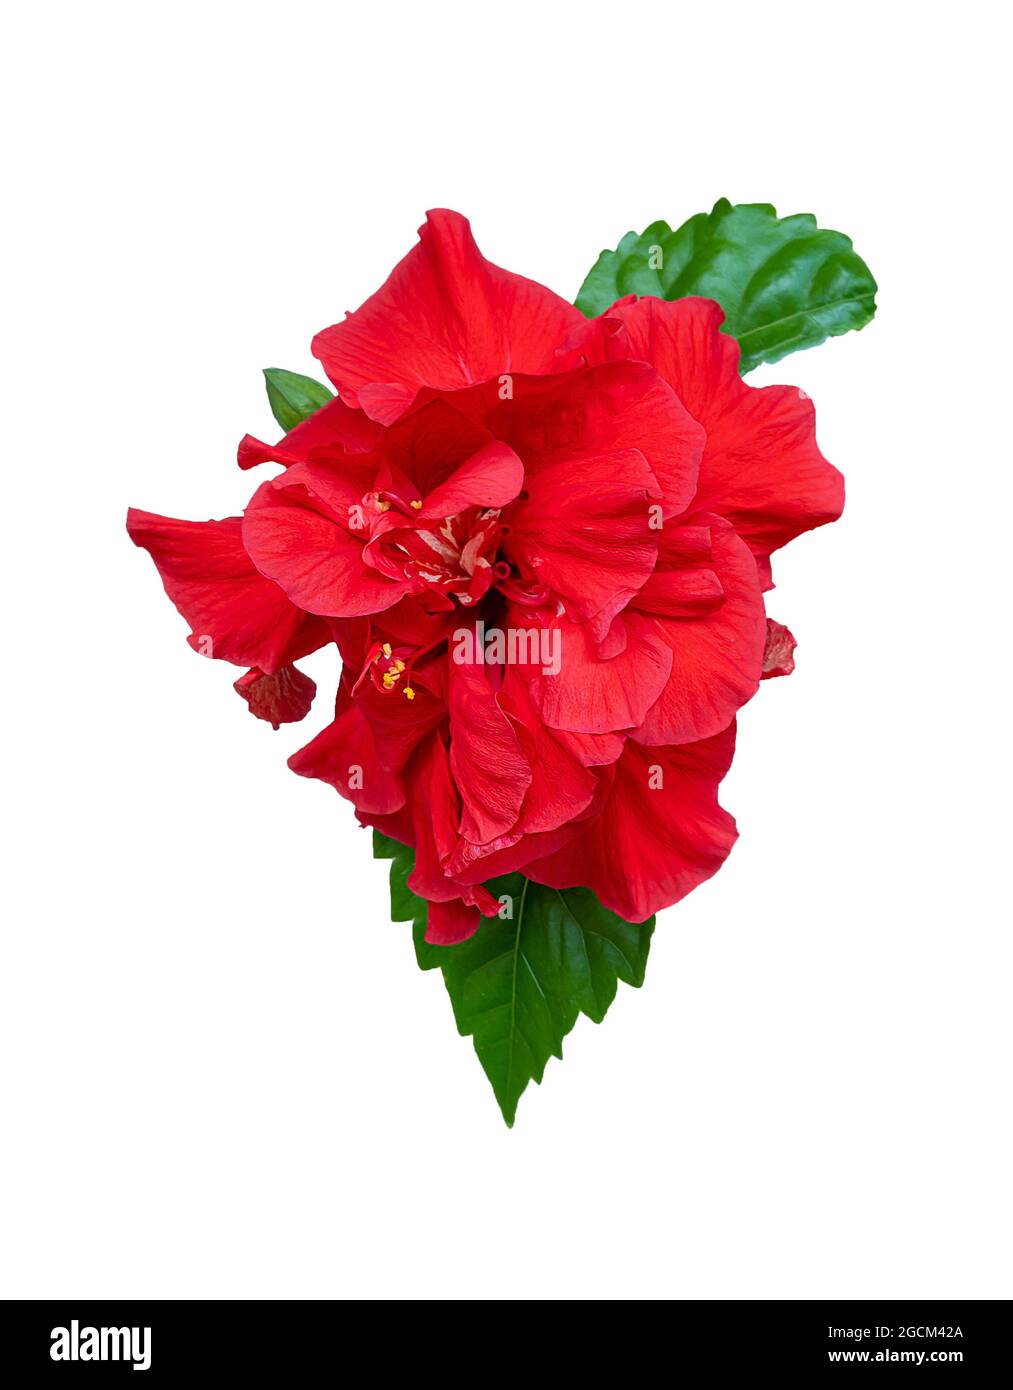 Hibiscus isolato su sfondo bianco. Fiore rosso, foglia e germoglio della pianta del tè di colore rosso. Rosa cinese. Ibisco terry sudanese Foto Stock